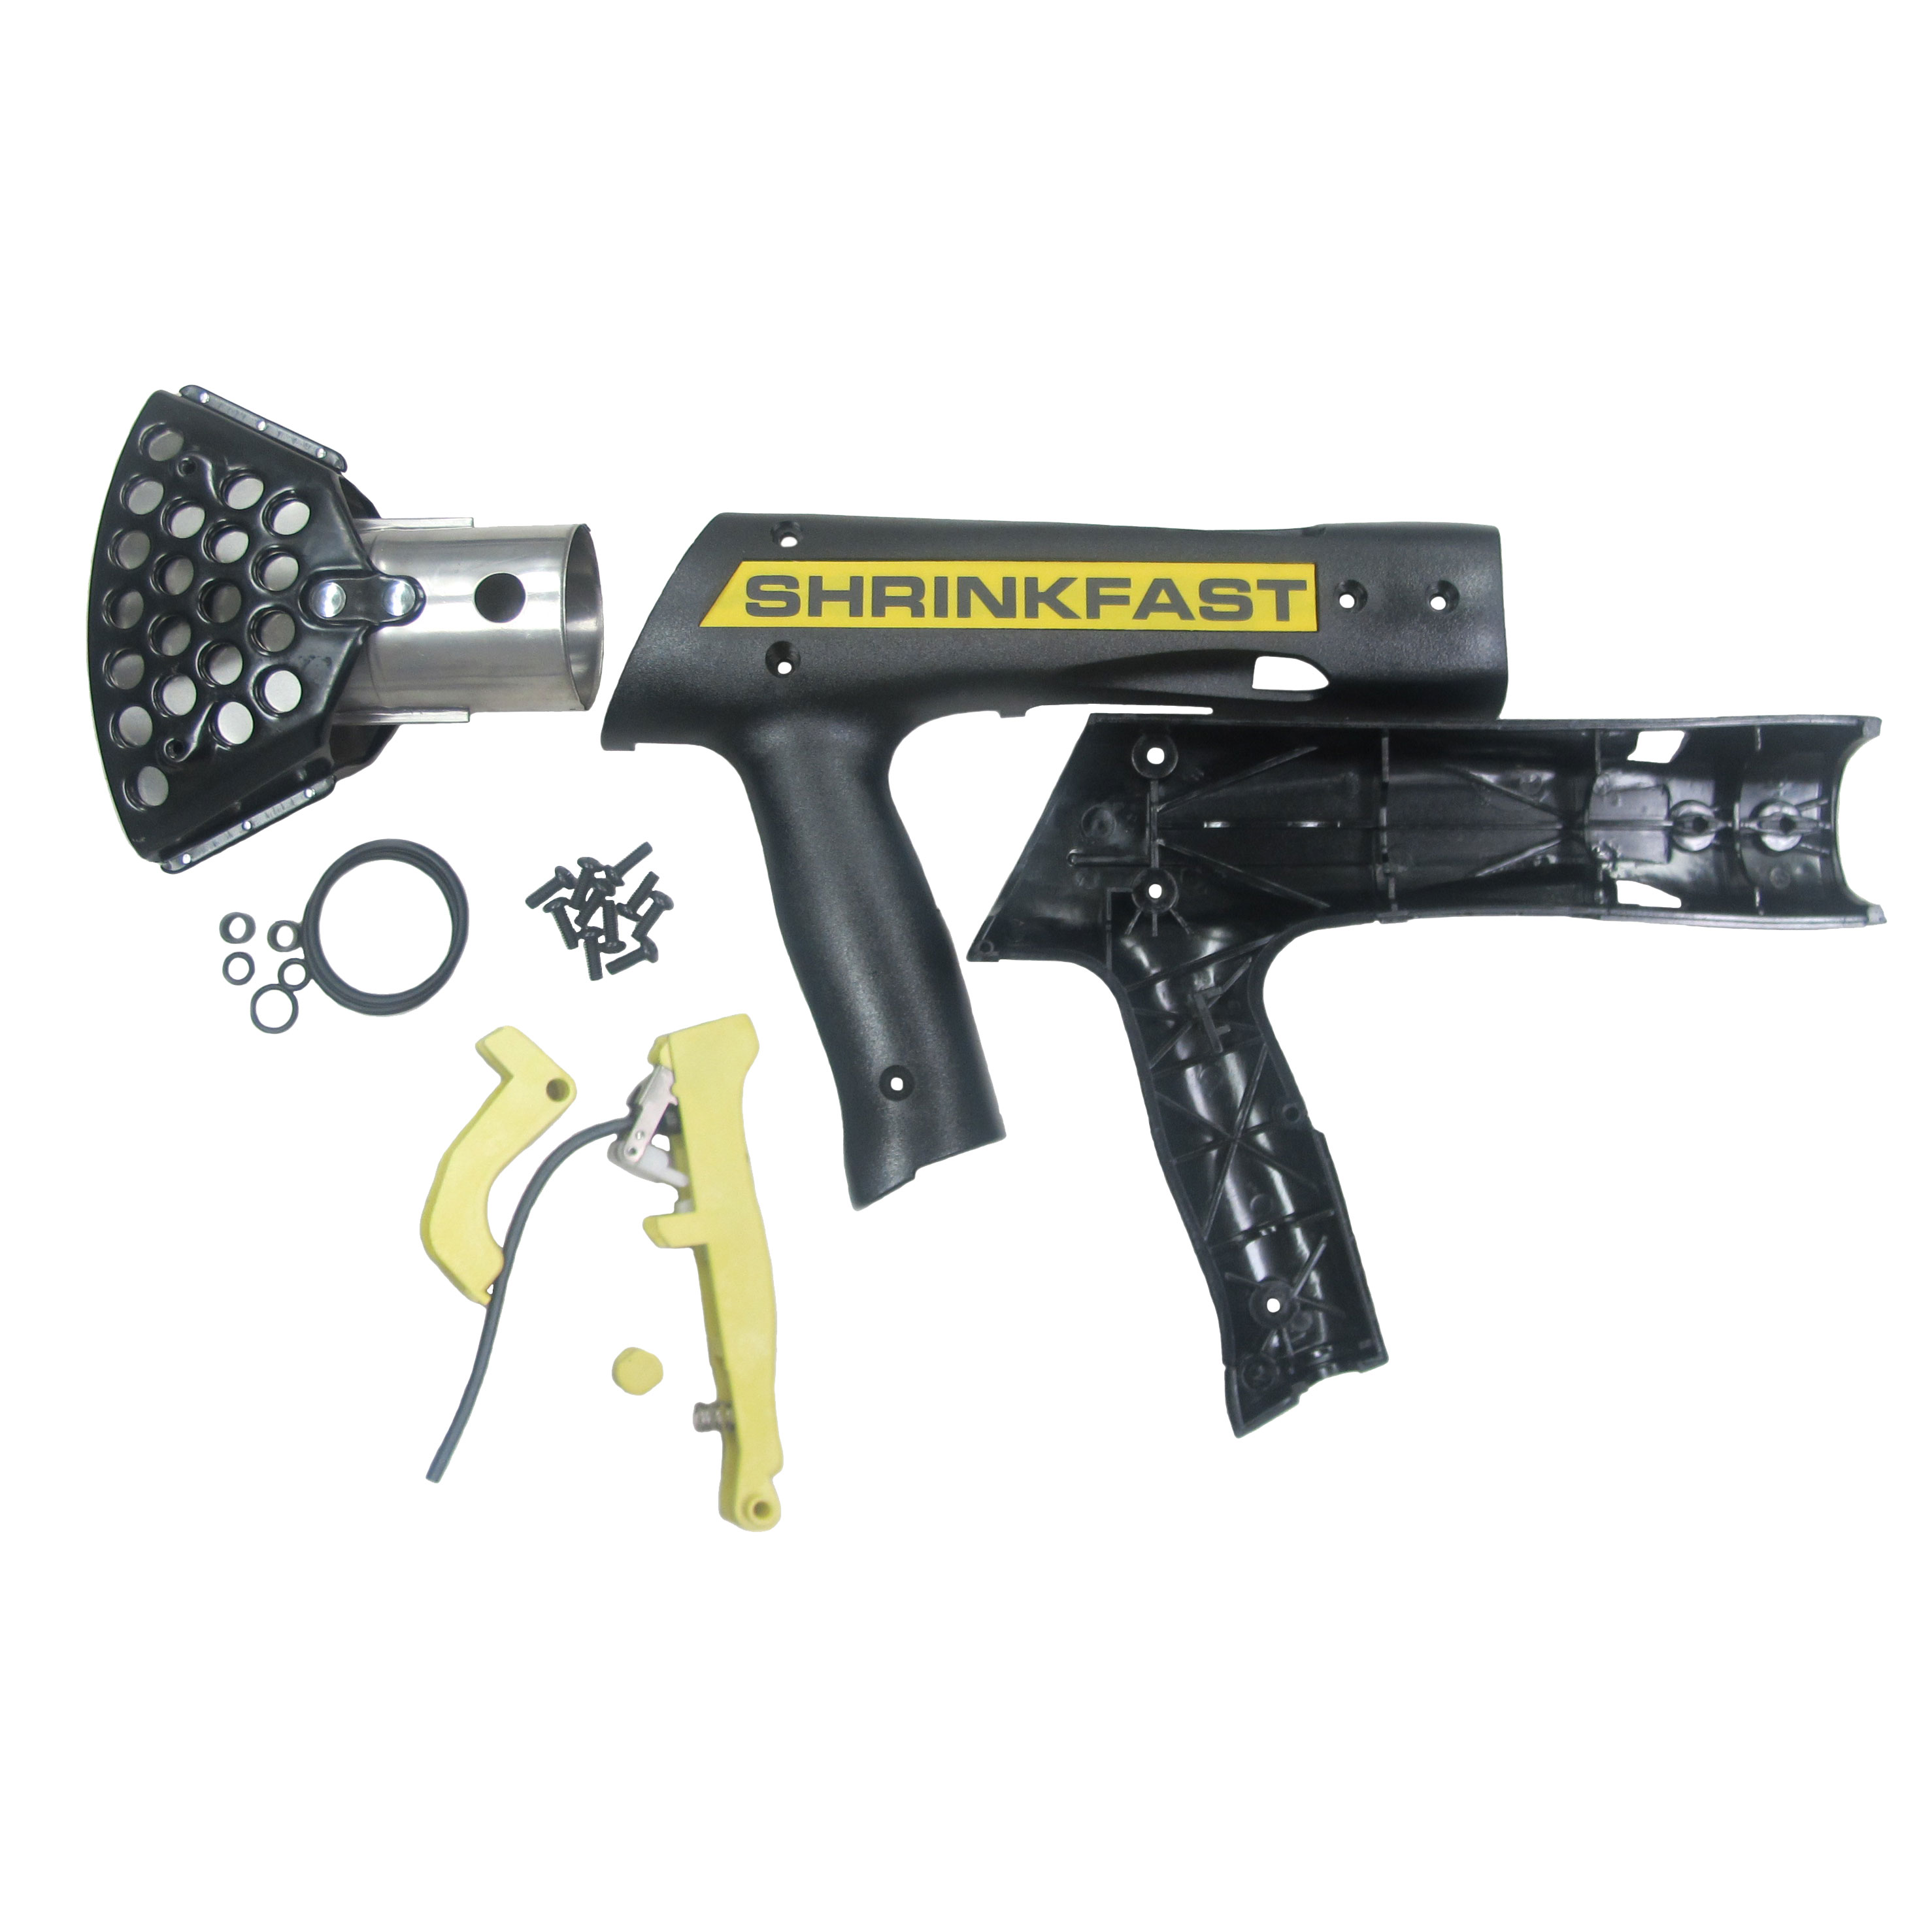 Heat Gun, Shrinkfast 998